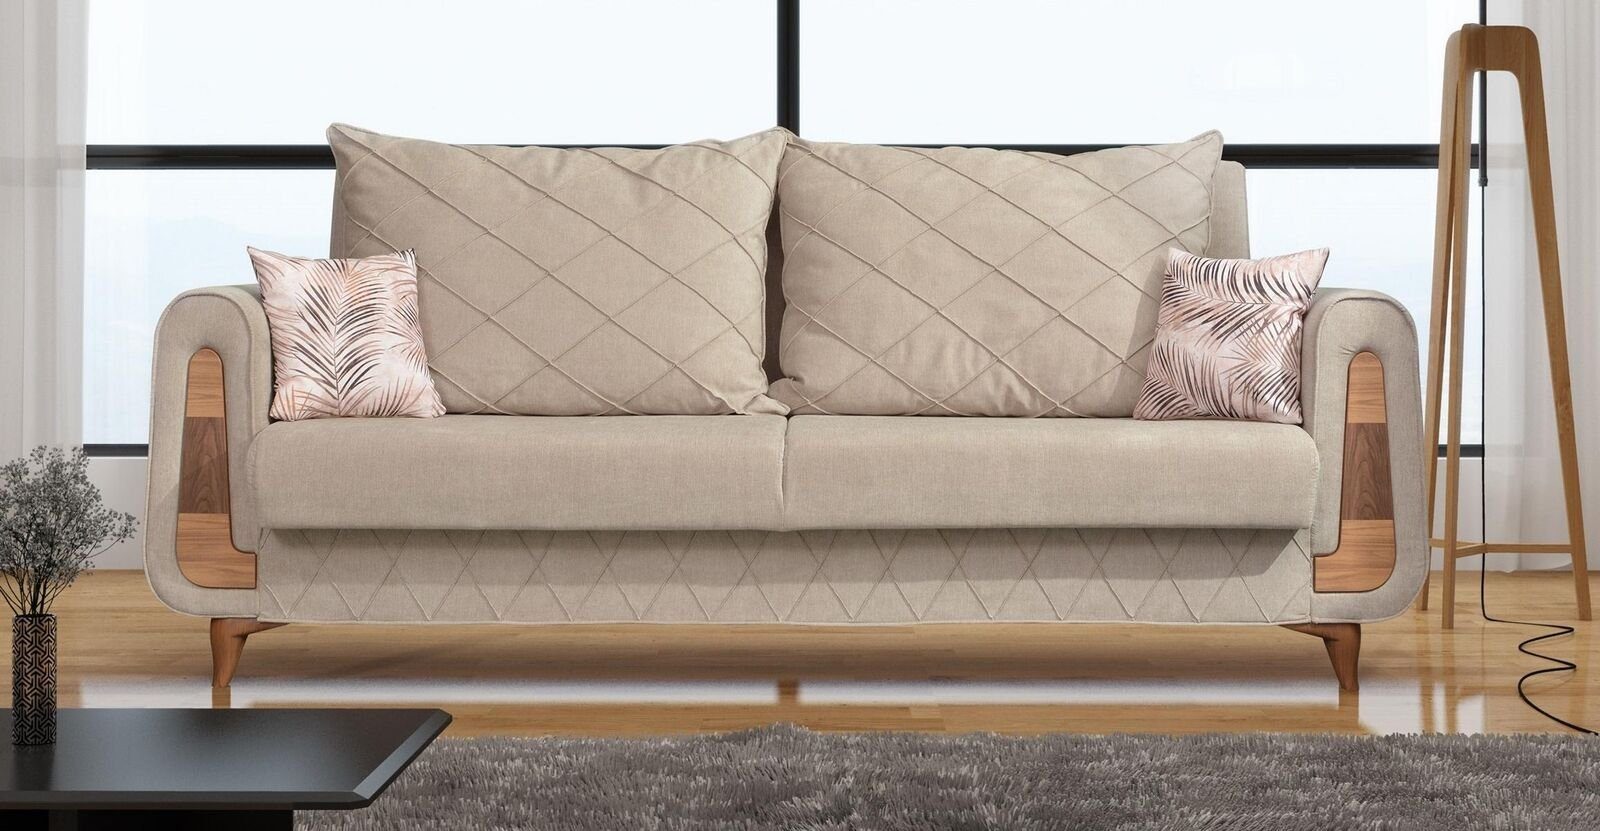 JVmoebel Sofa, Designer Moderne Sofa 3 Sitzer Möbel Textil Beige Couchen xxl Neu | Alle Sofas